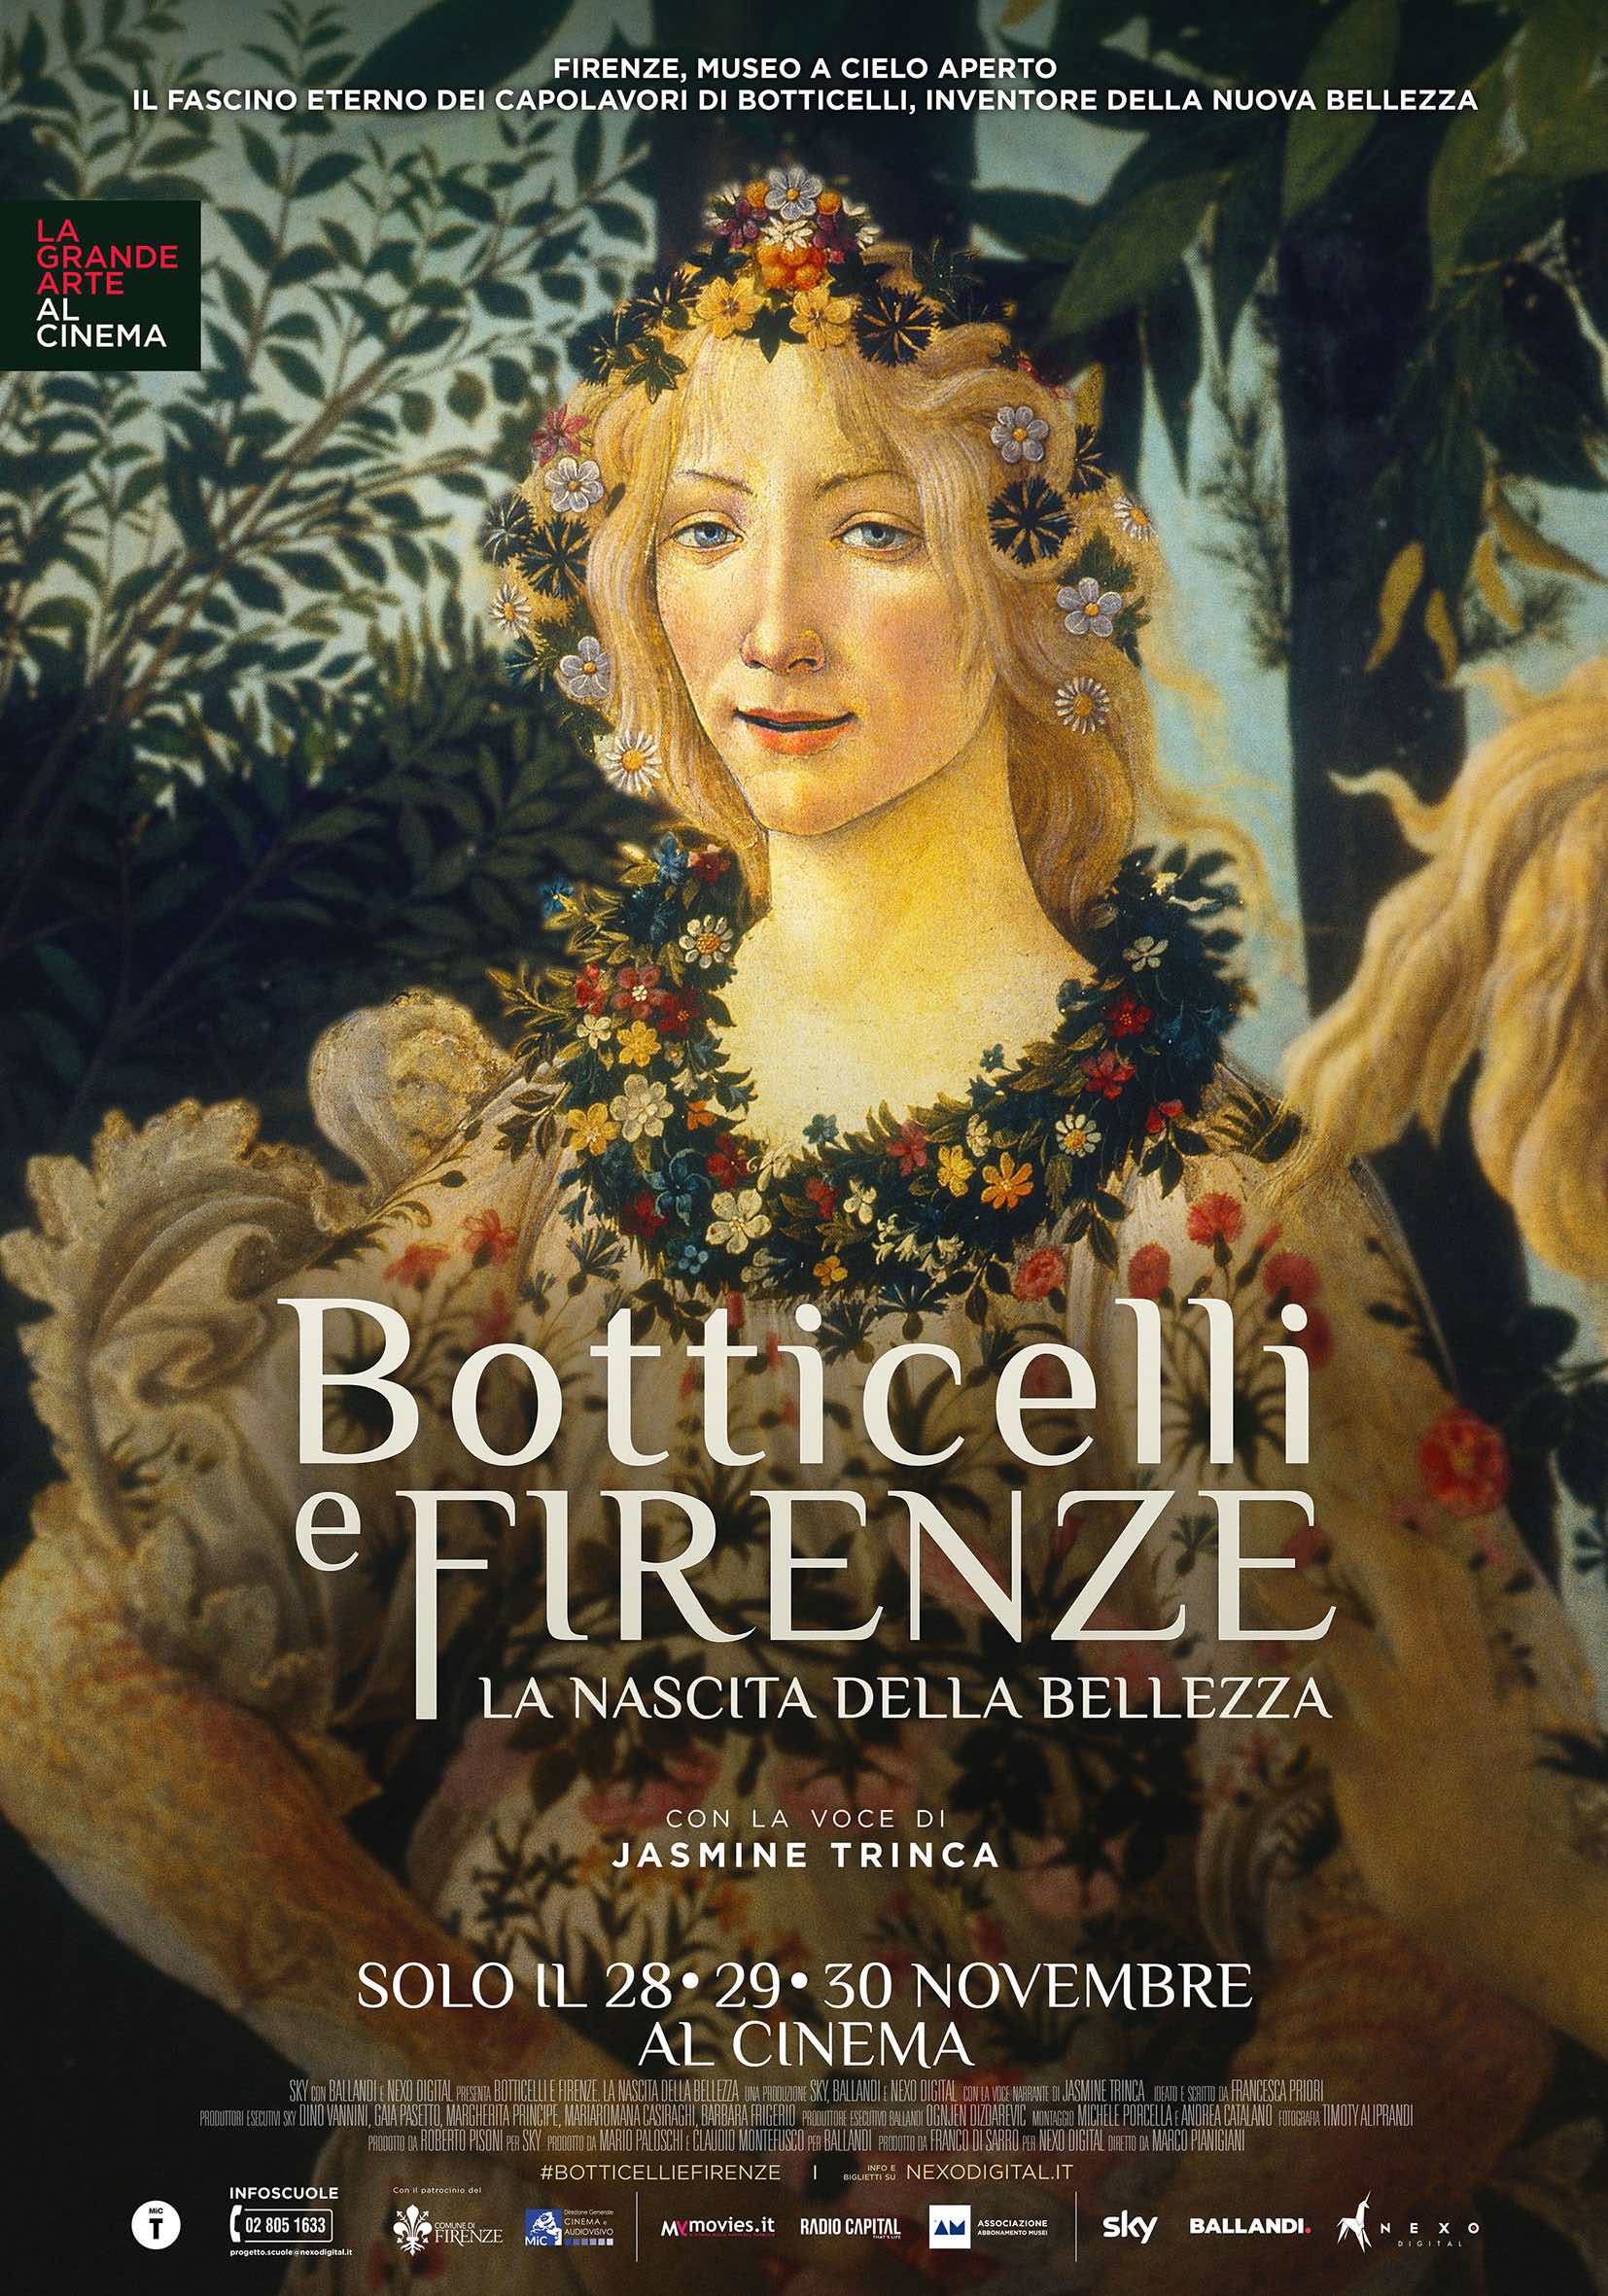 La locandina del docufilm Botticelli e Firenze. La nascita della bellezza